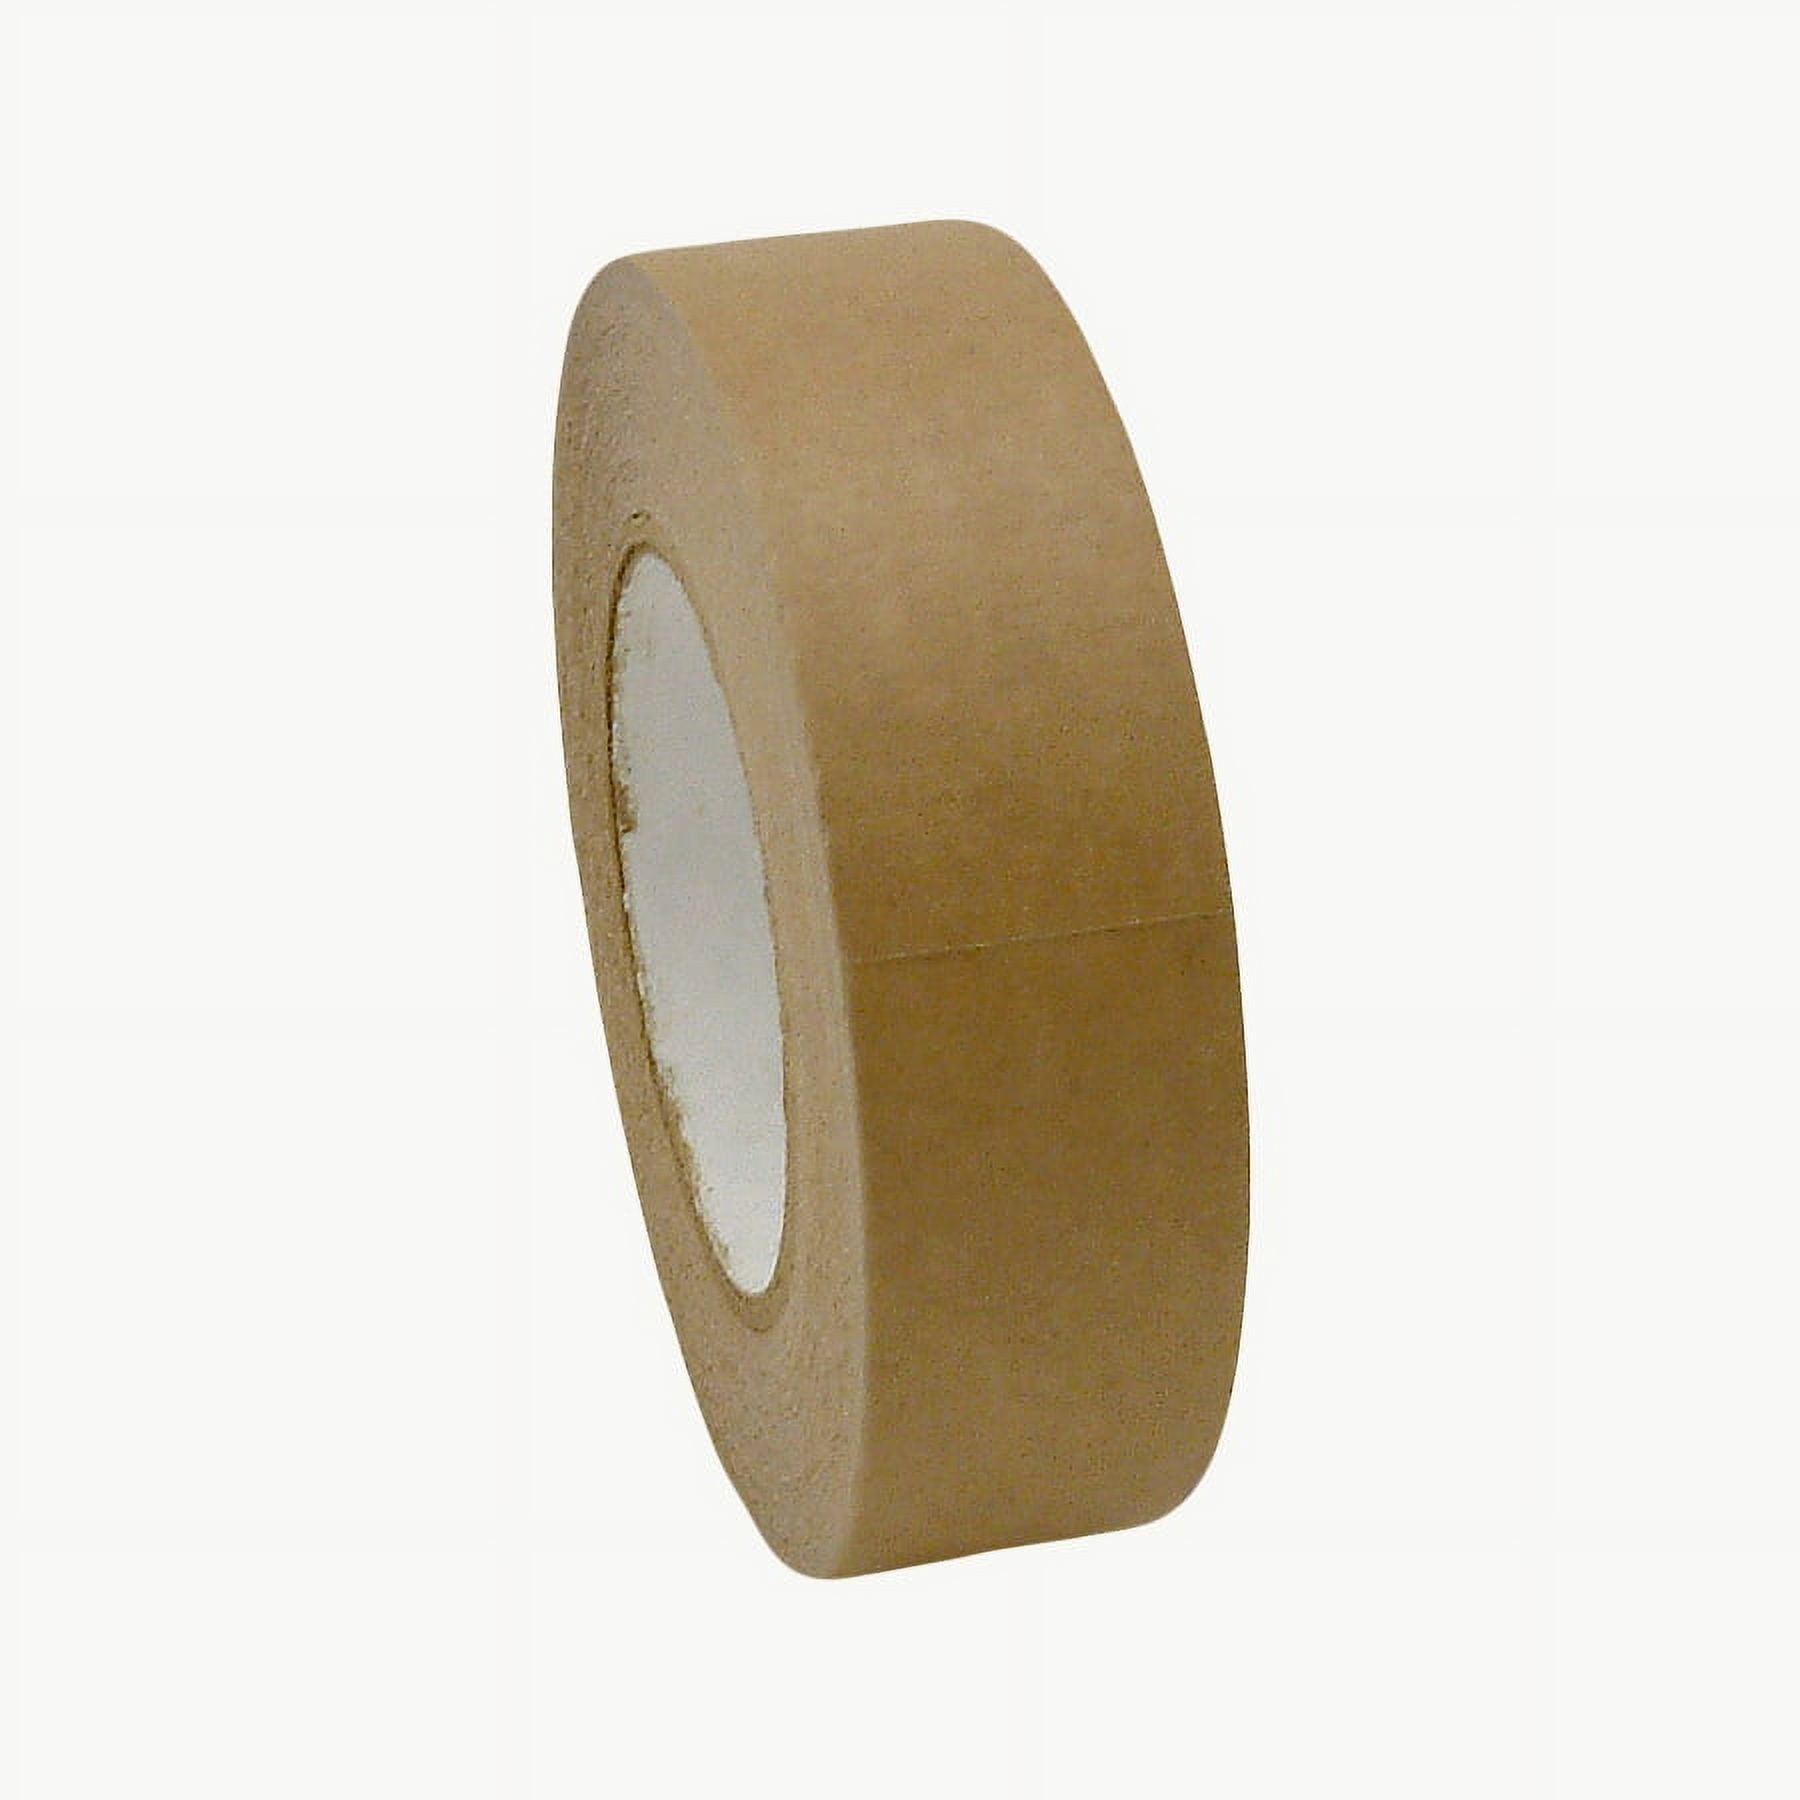 JVCC FPPT-01 Kraft Flatback Paper Packaging Tape: 3 in x 60 yds. (Brown)